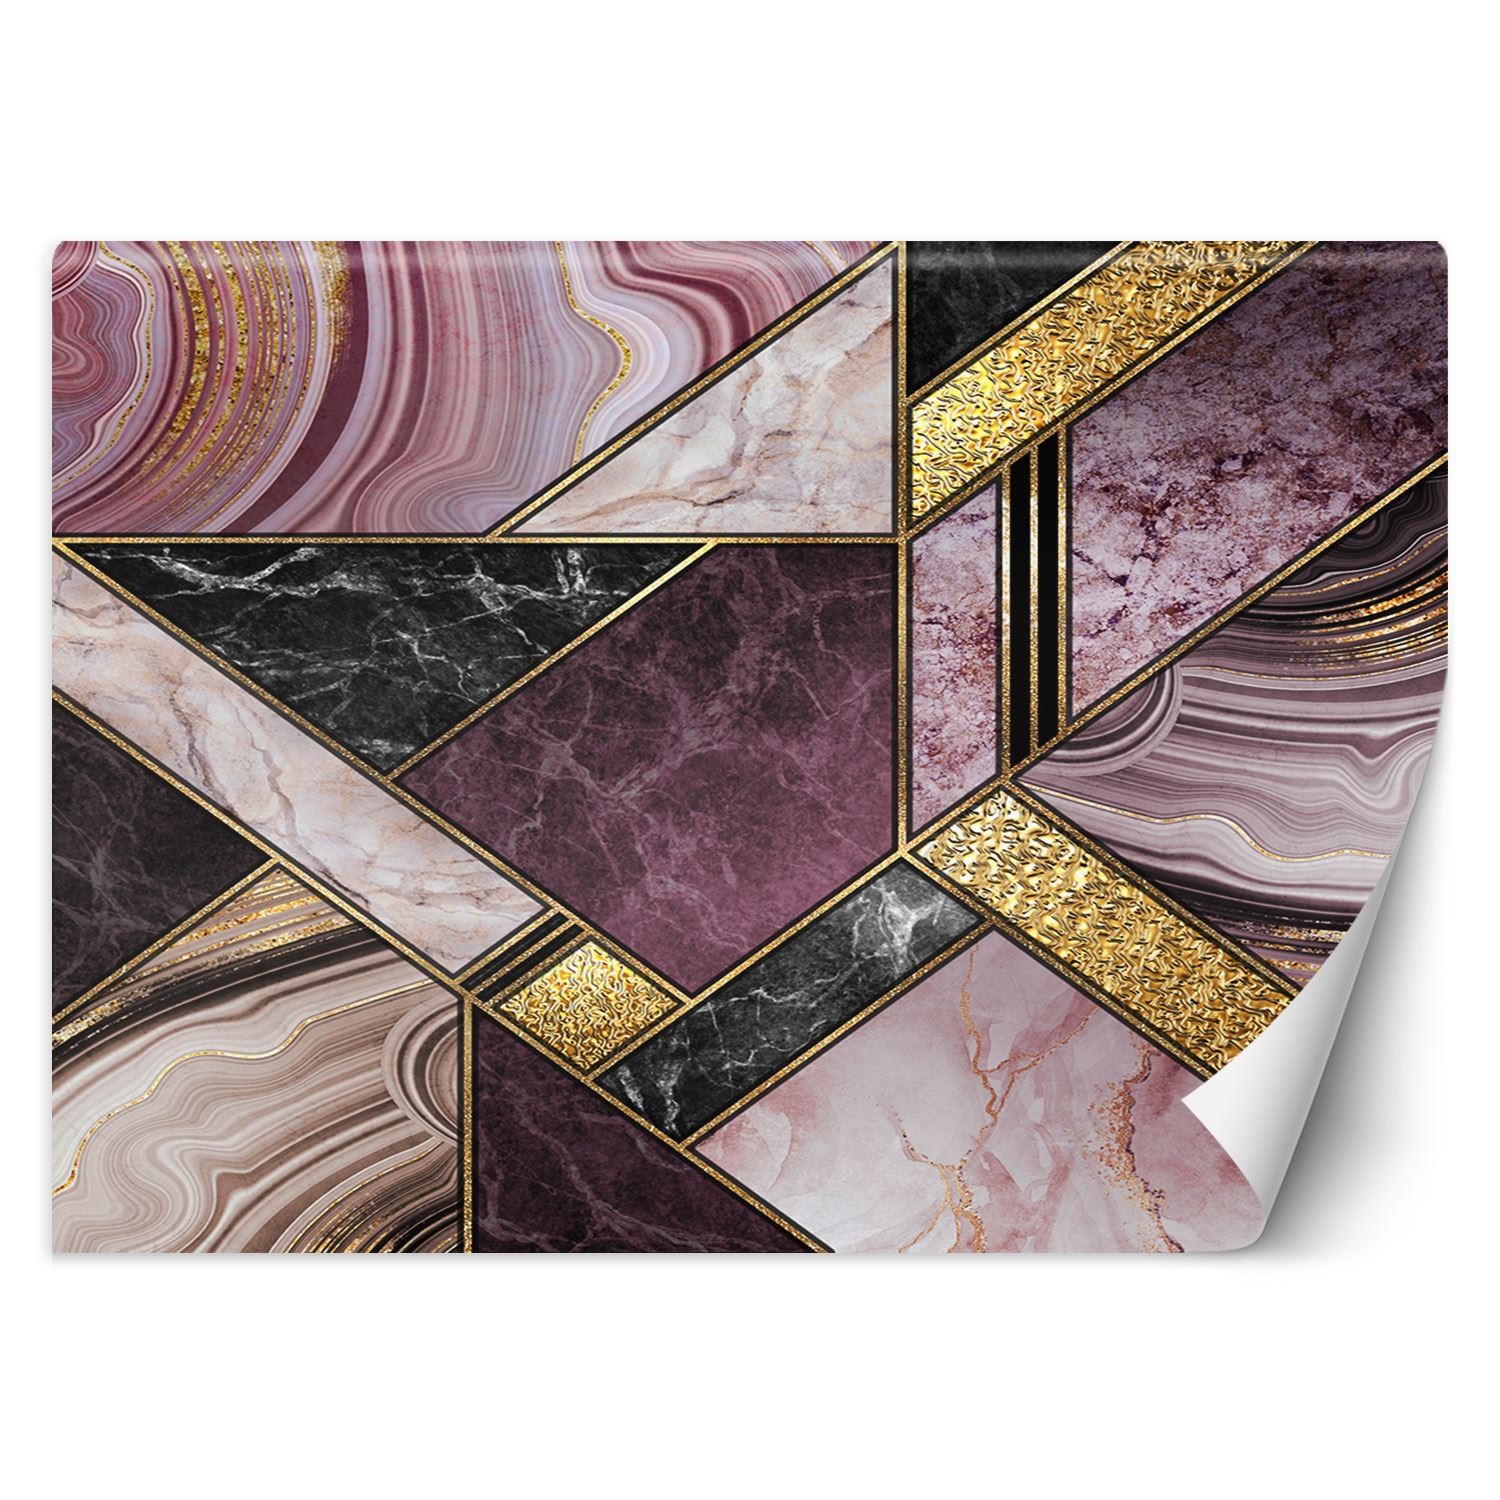 Trend24 – Behang – Marmeren Abstract – Vliesbehang – Fotobehang 3D – Behang Woonkamer – 450x315x2 cm – Incl. behanglijm